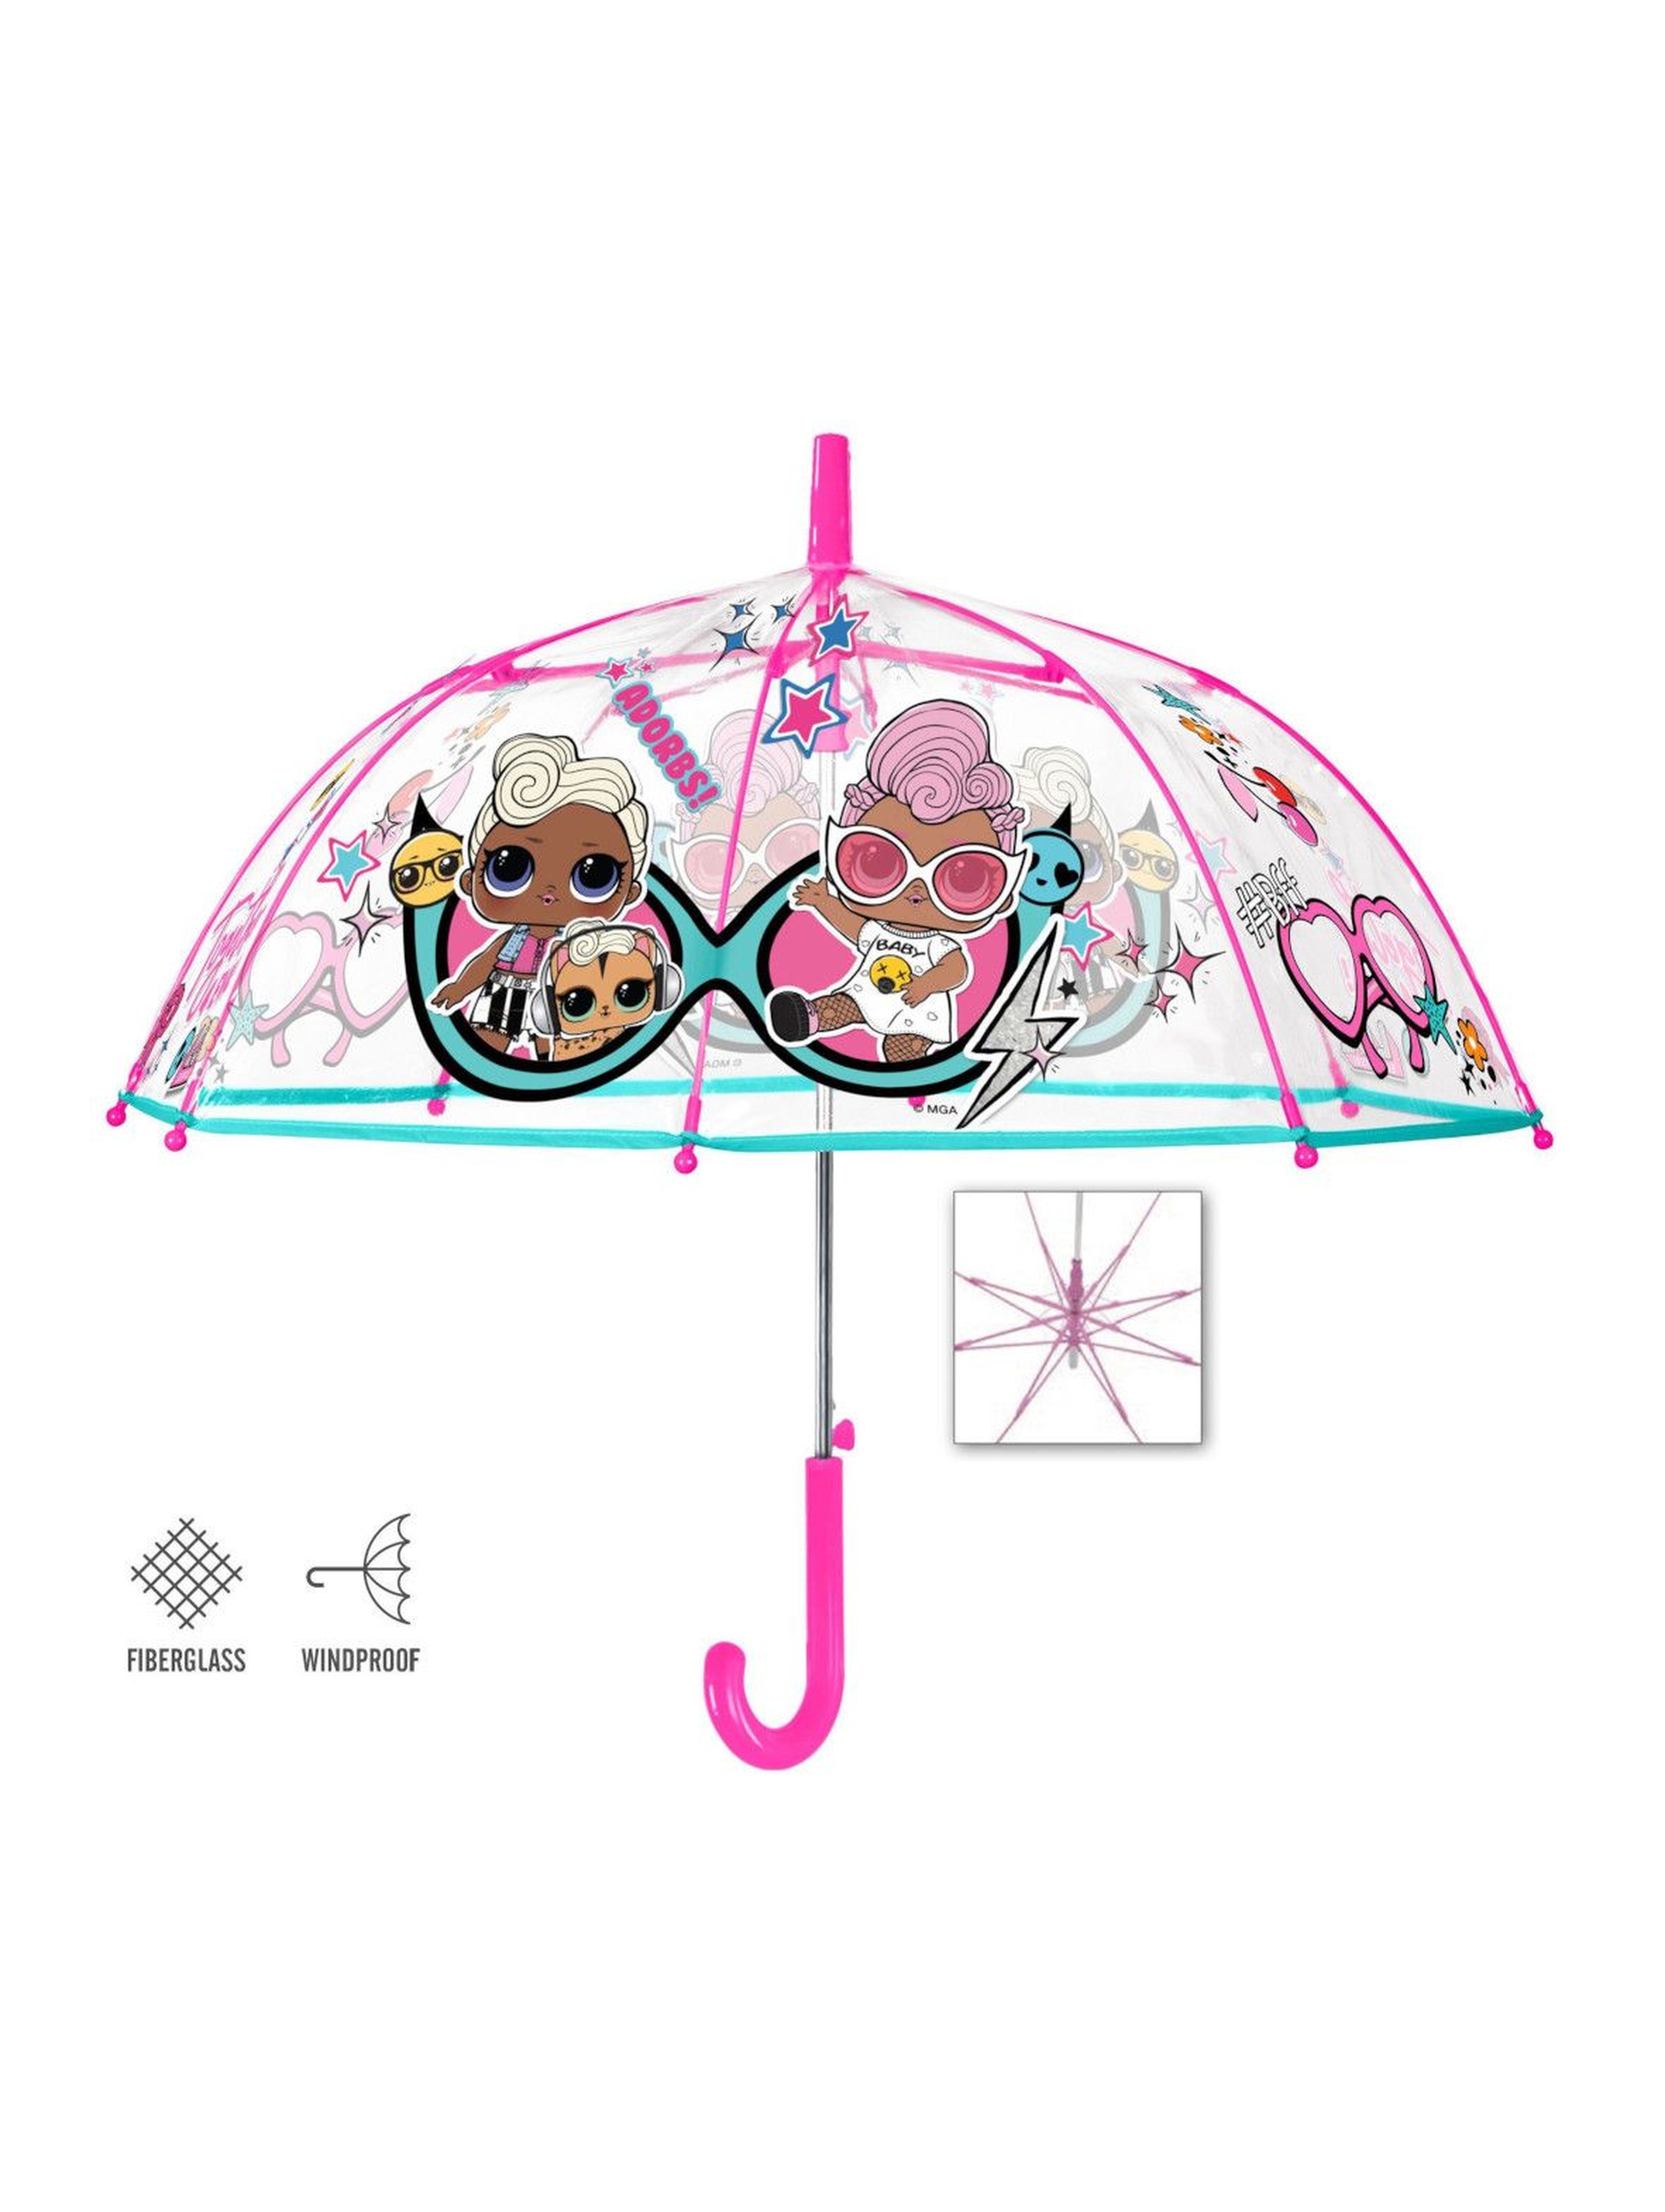 Parasolka dla dziewczynki LOL Surprise